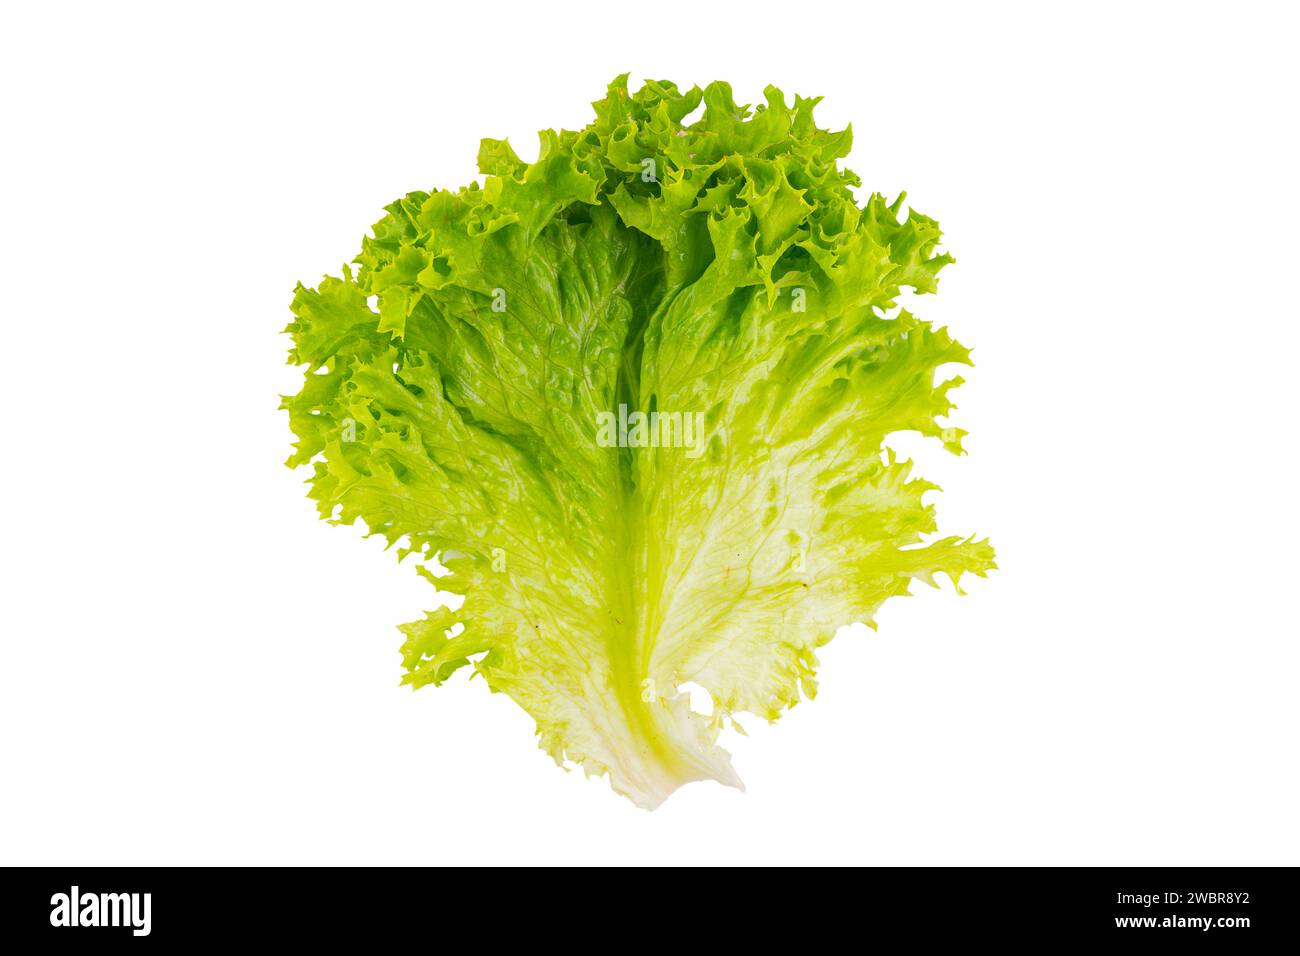 Salade biologique de laitue, légume hydroponique vert frais isolé sur fond blanc. Feuille de salade en gros plan. Nourriture végétarienne, mode de vie sain Banque D'Images